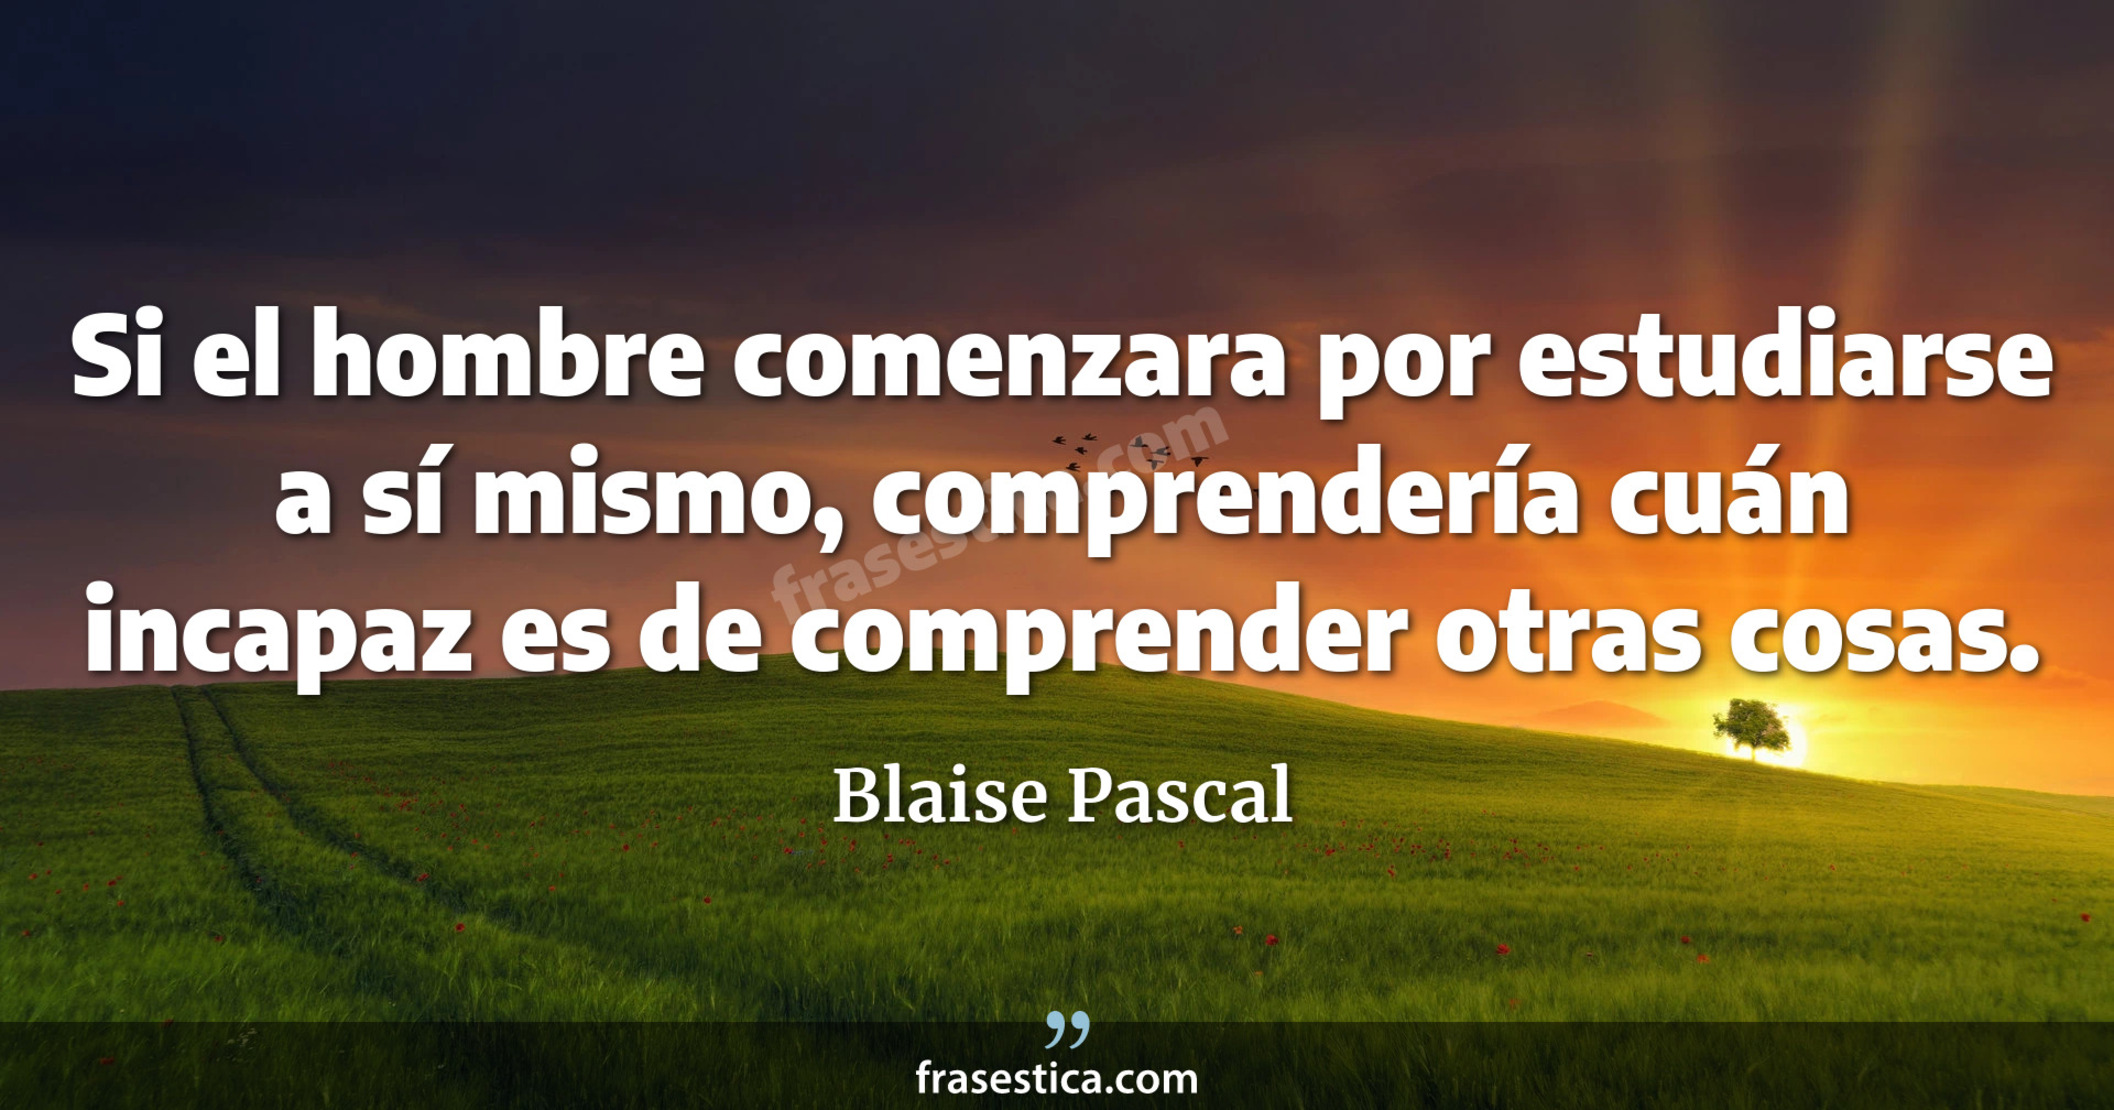 Si el hombre comenzara por estudiarse a sí mismo, comprendería cuán incapaz es de comprender otras cosas. - Blaise Pascal